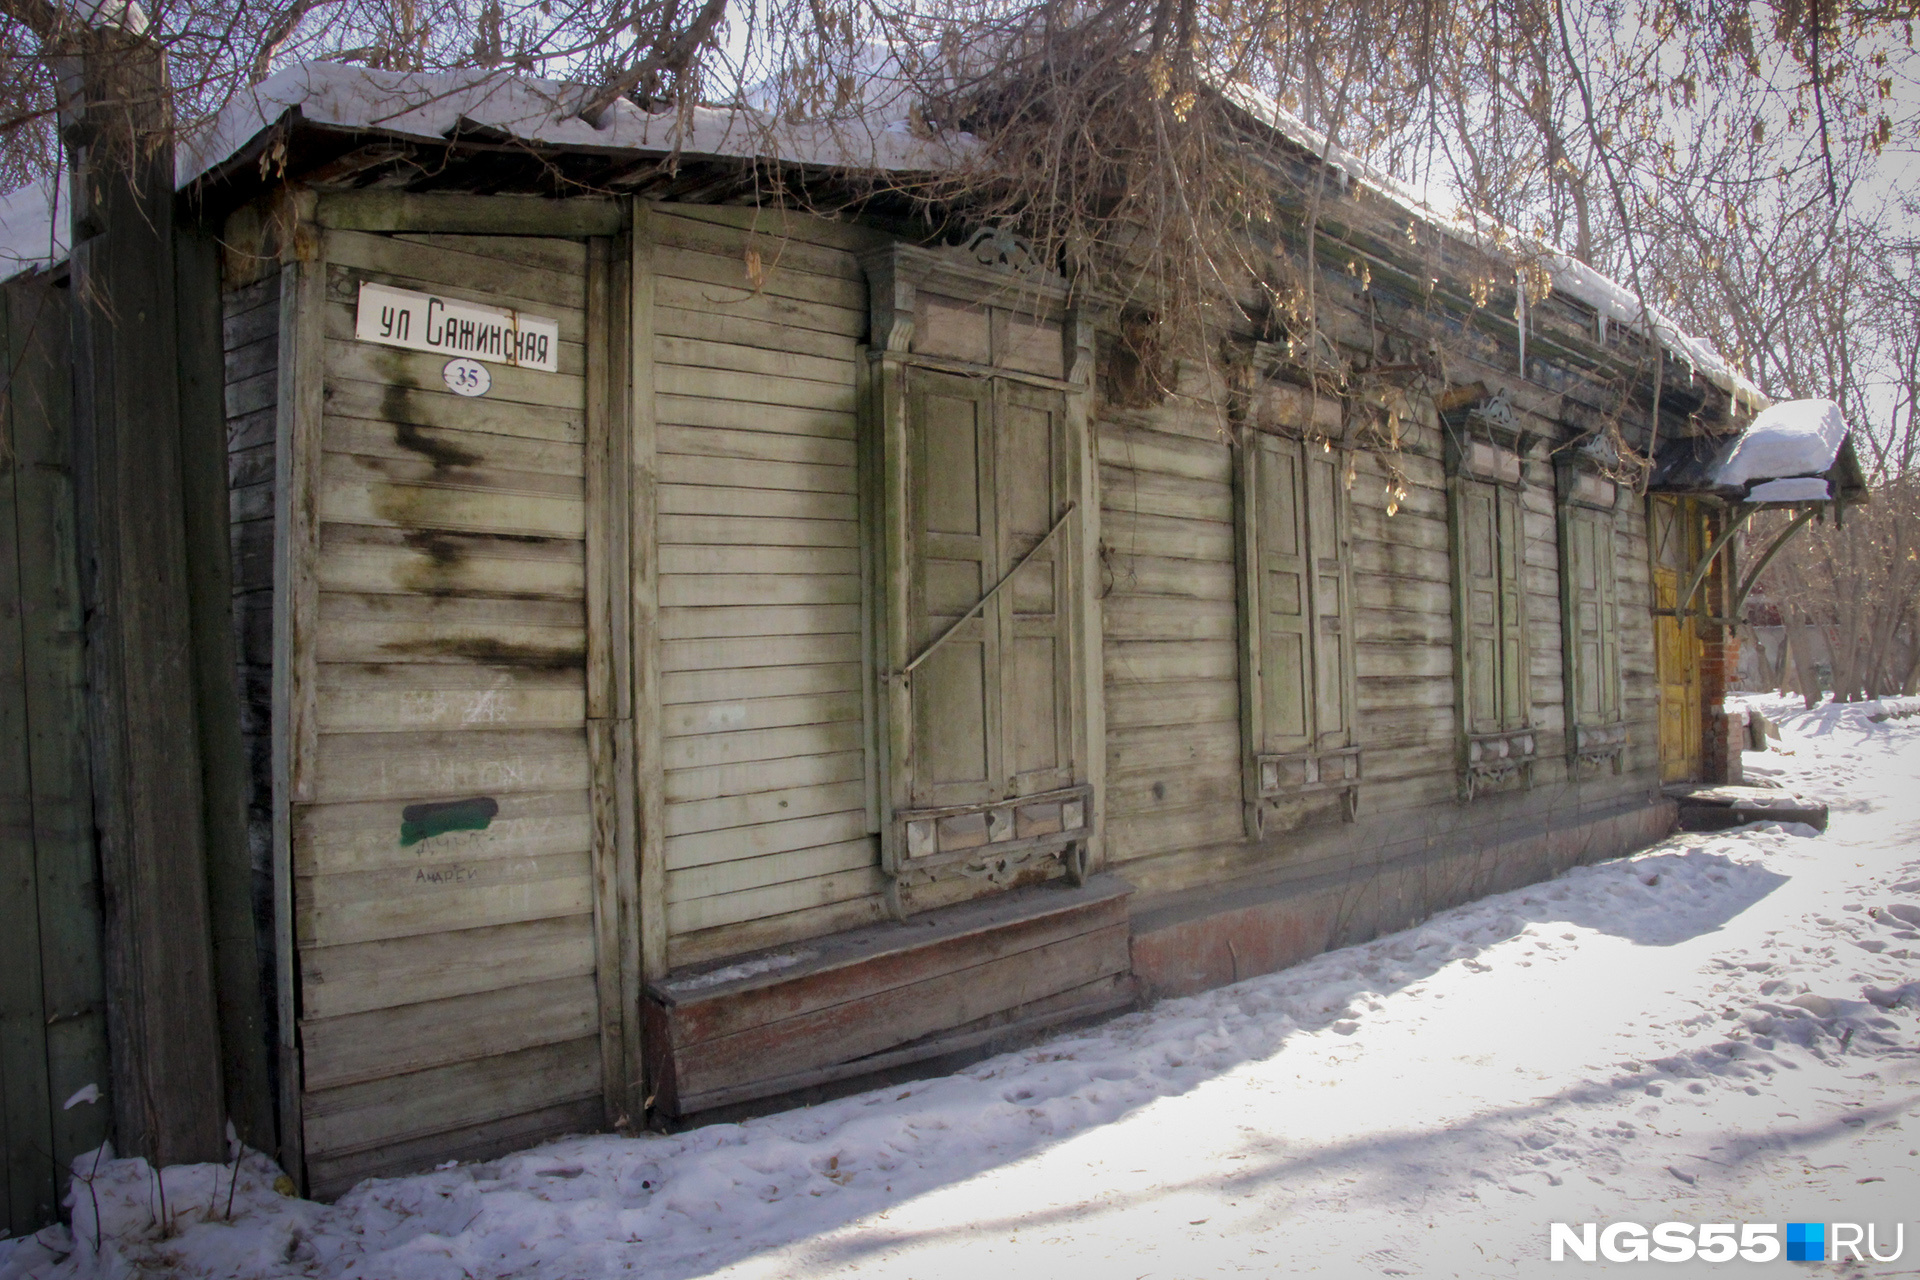 Дом поделён на две квартиры, одна из которых пустует уже шесть лет, — семья Суворовых закрыла ставни, чтобы никто не пробрался внутрь